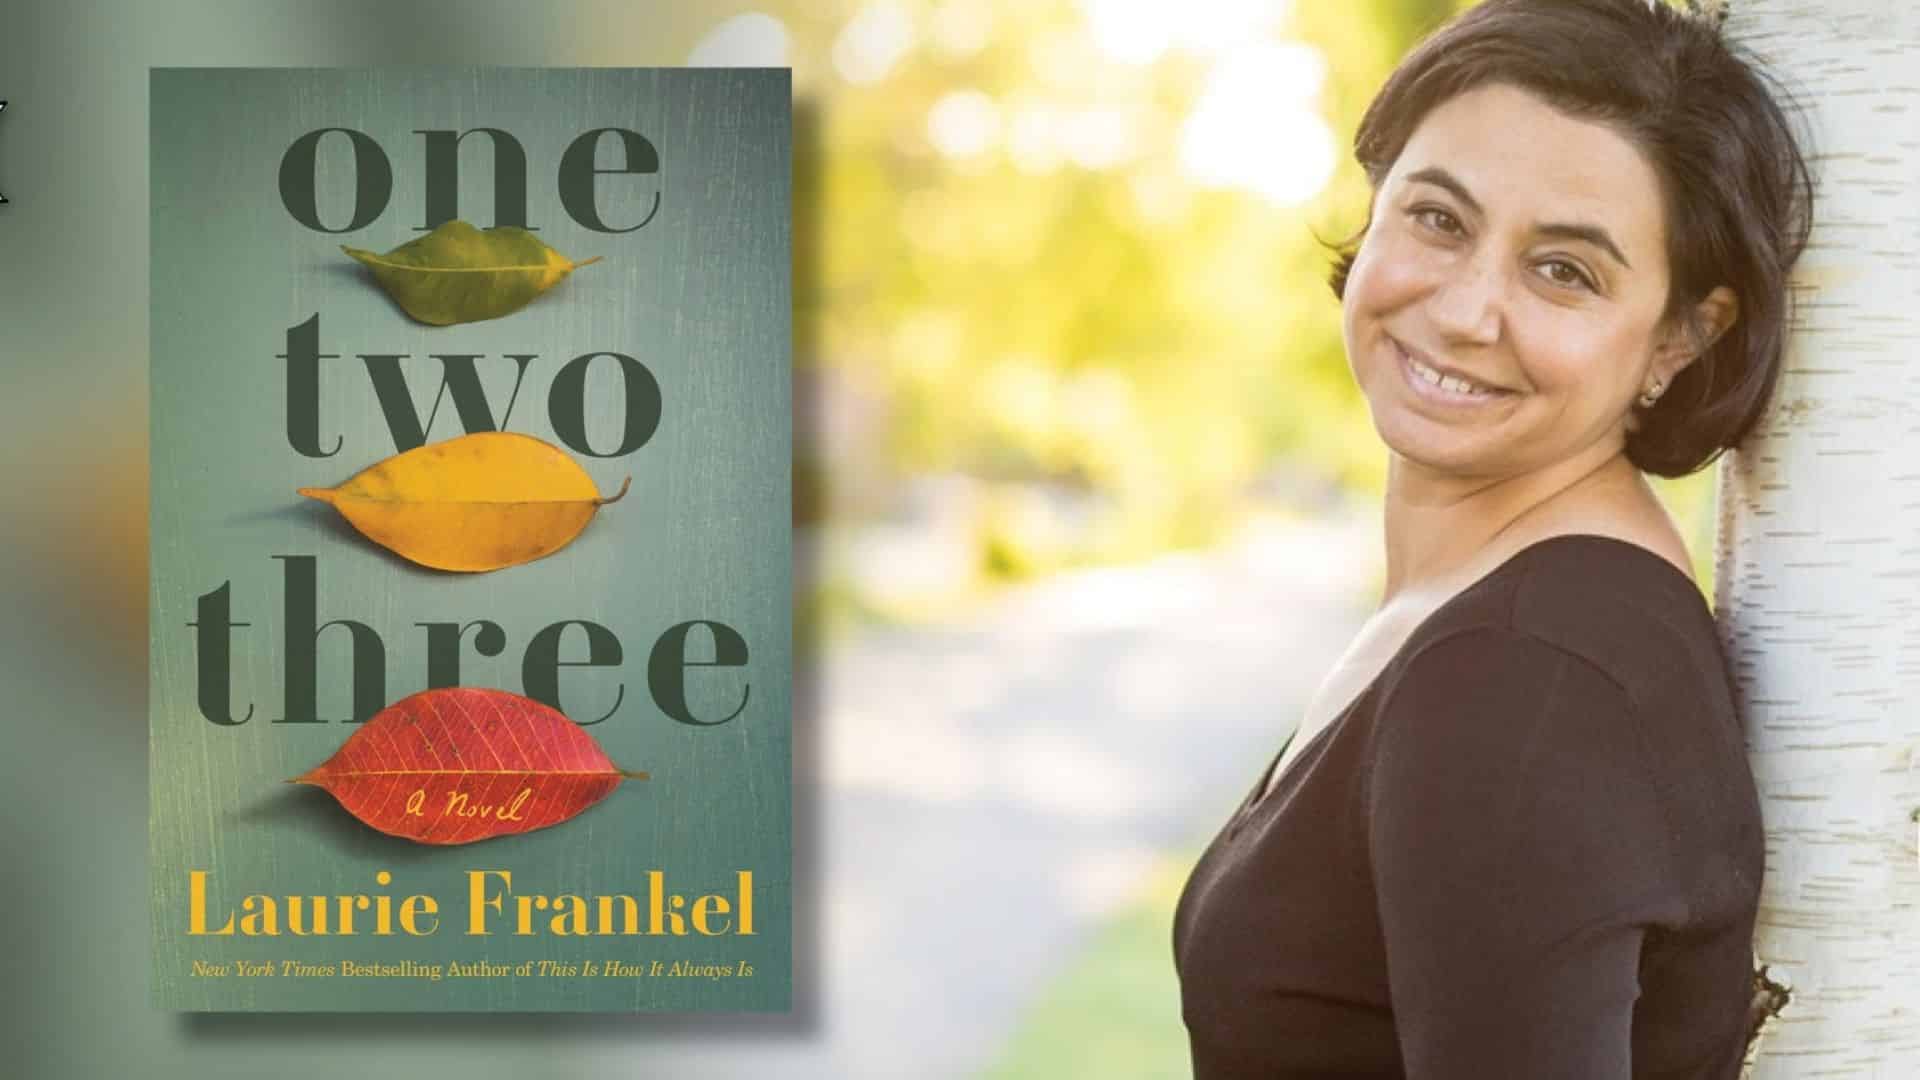 Une entrevue exclusive avec Laurie Frankel auteur de One Two Three